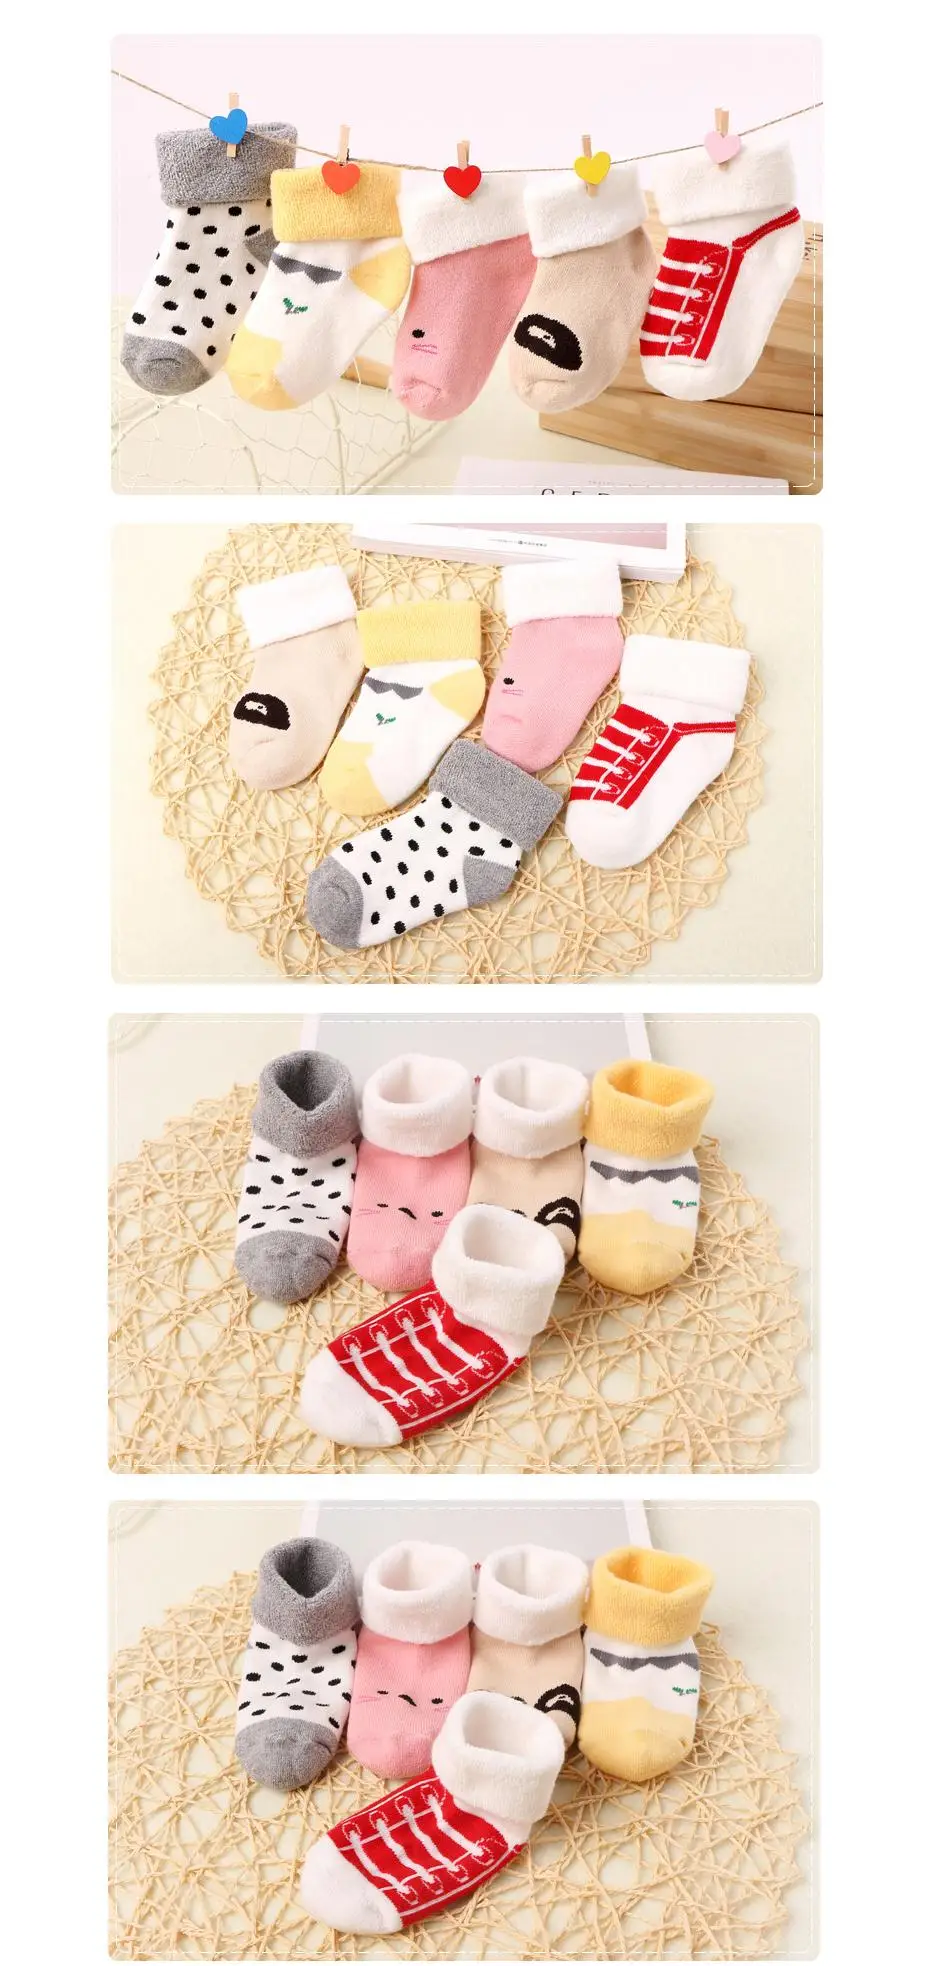 5 пара/лот, зимние носки для маленьких мальчиков хлопковые От 0 до 3 лет Короткие Носки ярких цветов с рисунком для новорожденных девочек